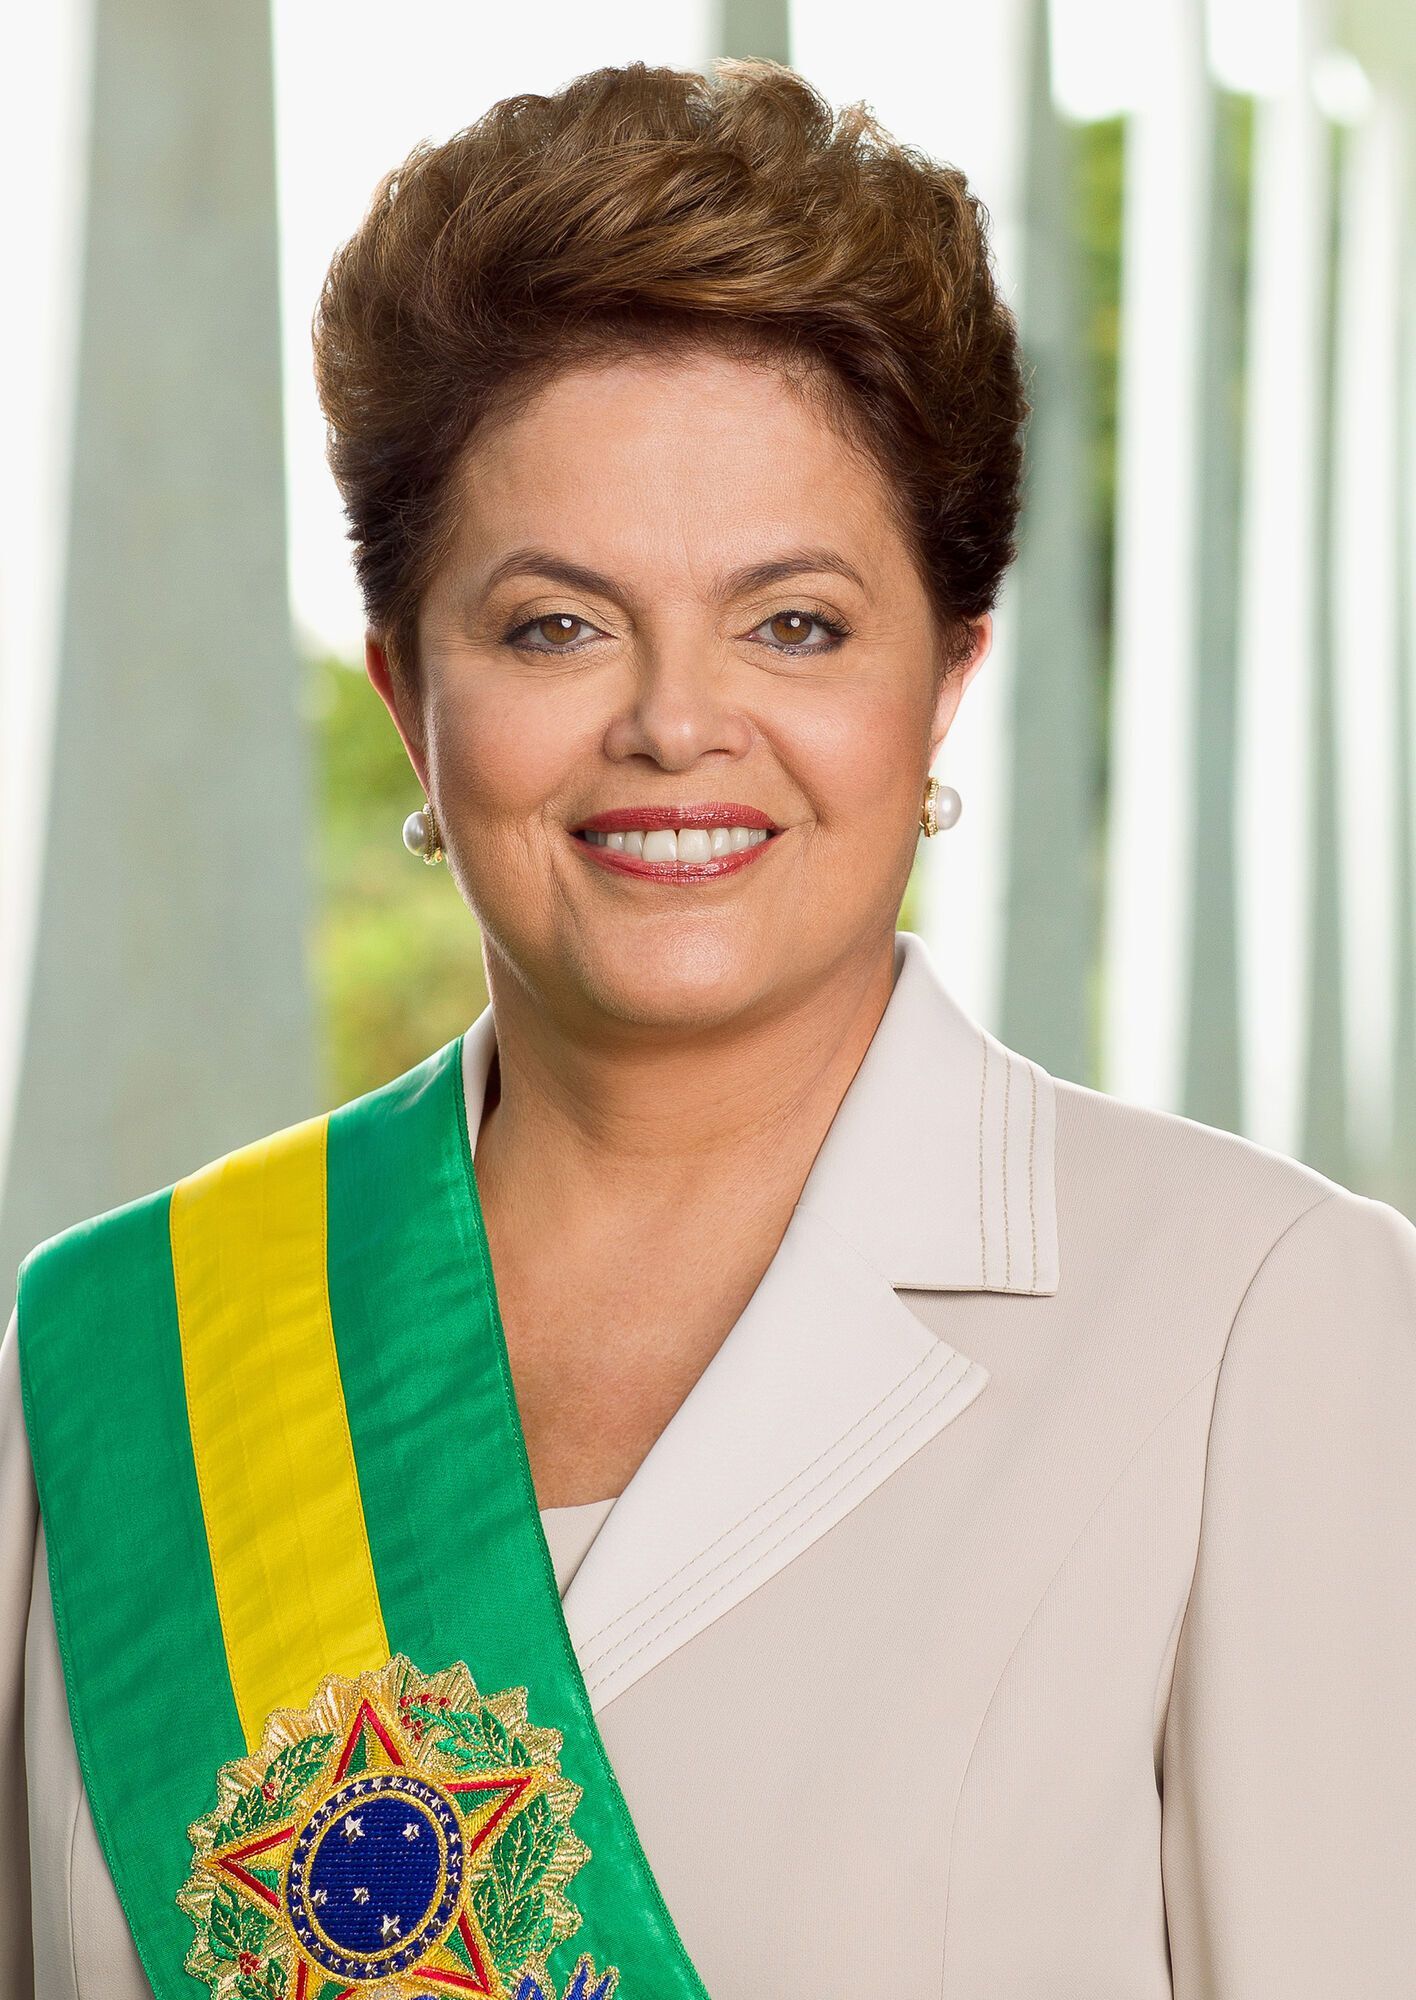 12 травня 2016 року Сенат Бразилії проголосував за імпічмент президента Ділми Руссефф